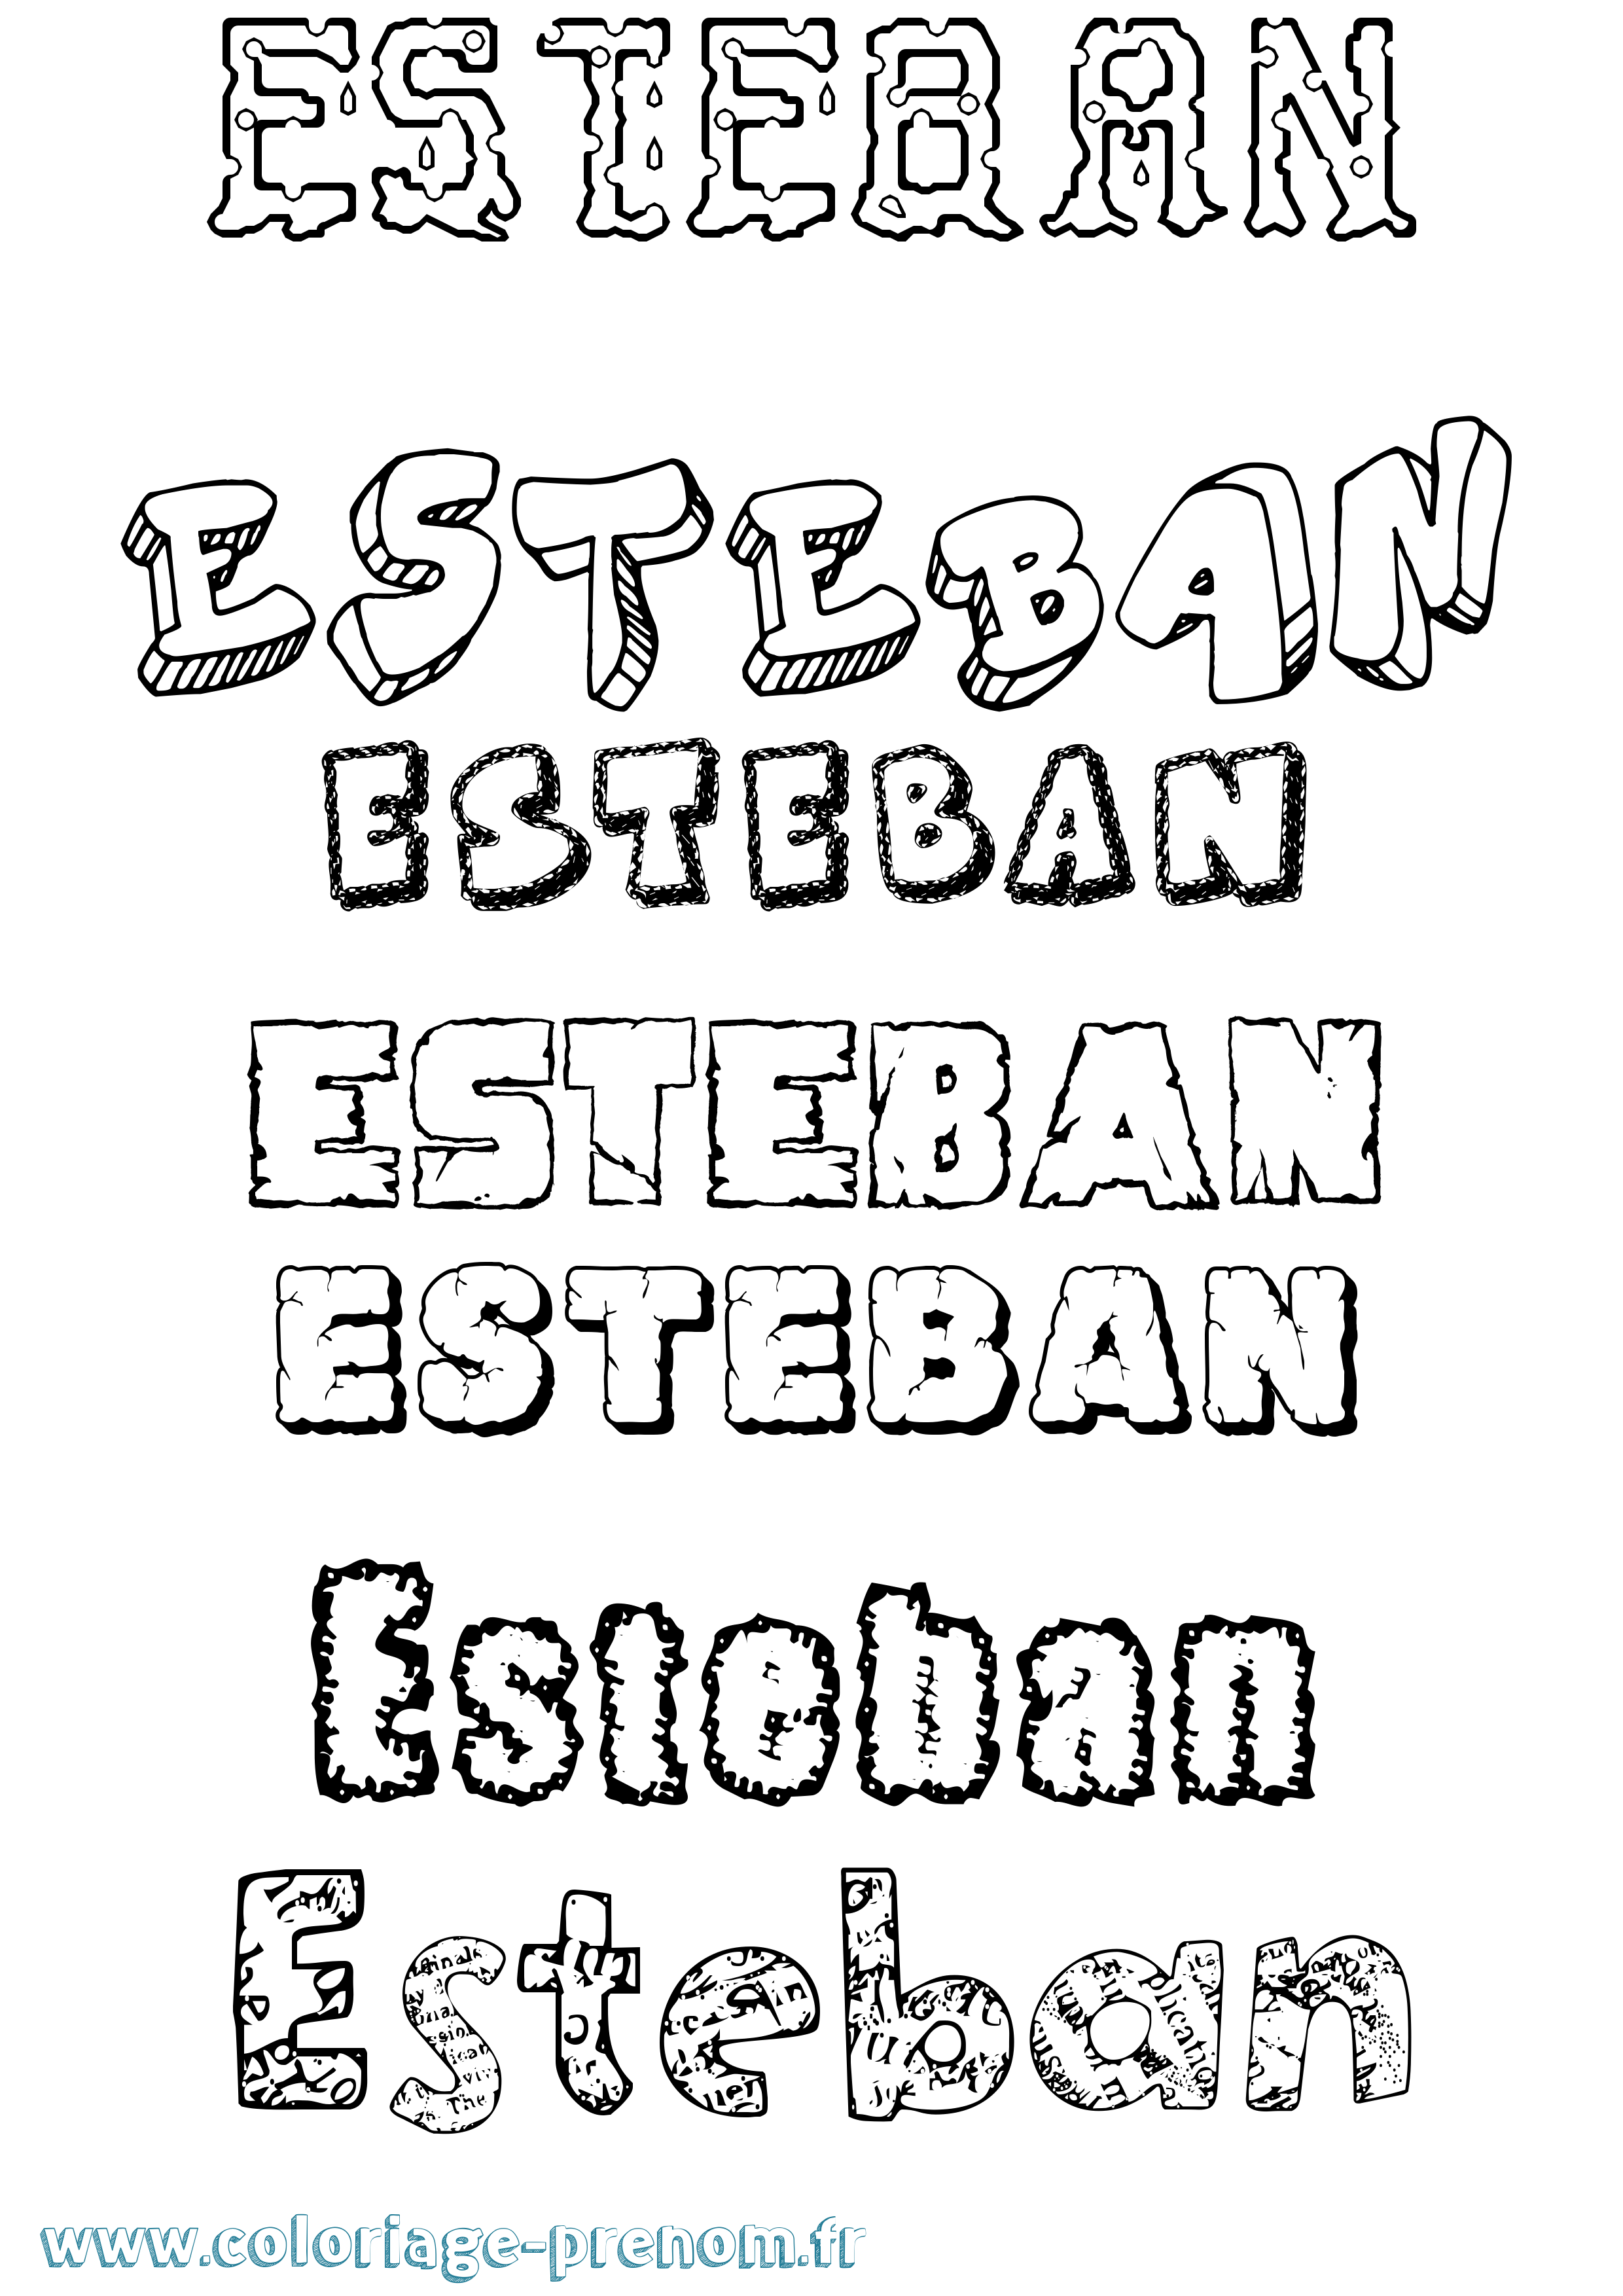 Coloriage prénom Esteban